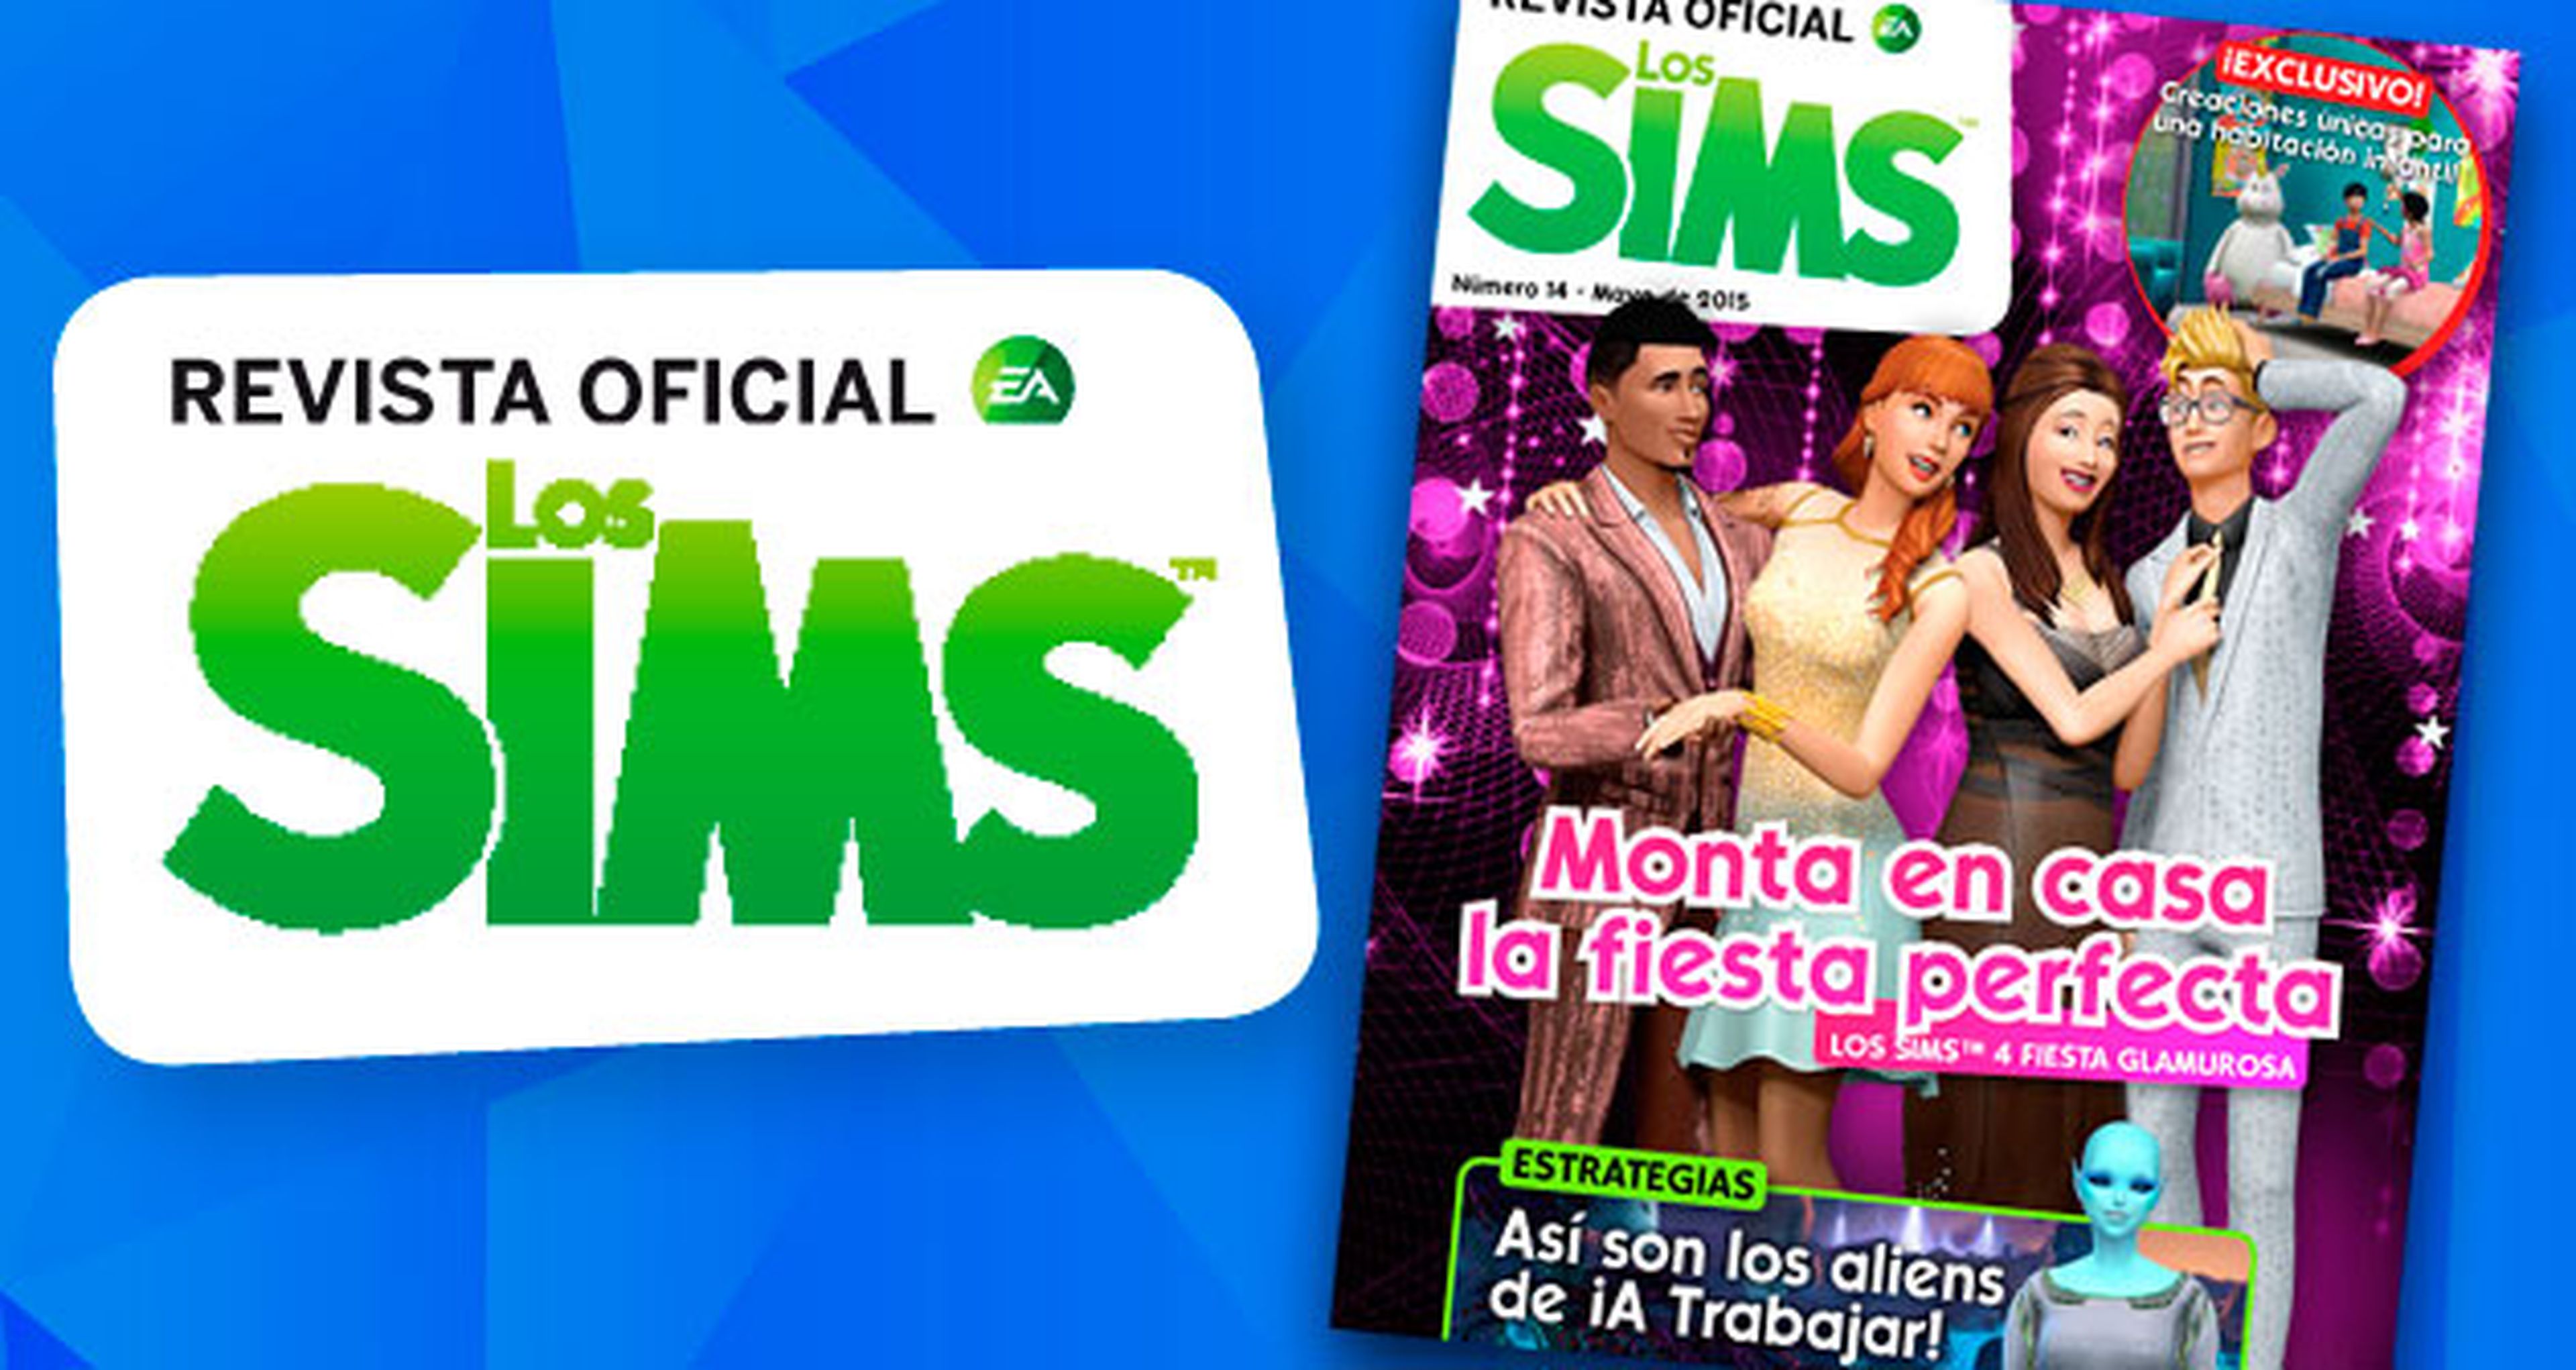 ¡Ya puedes descargar gratis el número 14 de La Revista Oficial de Los Sims!